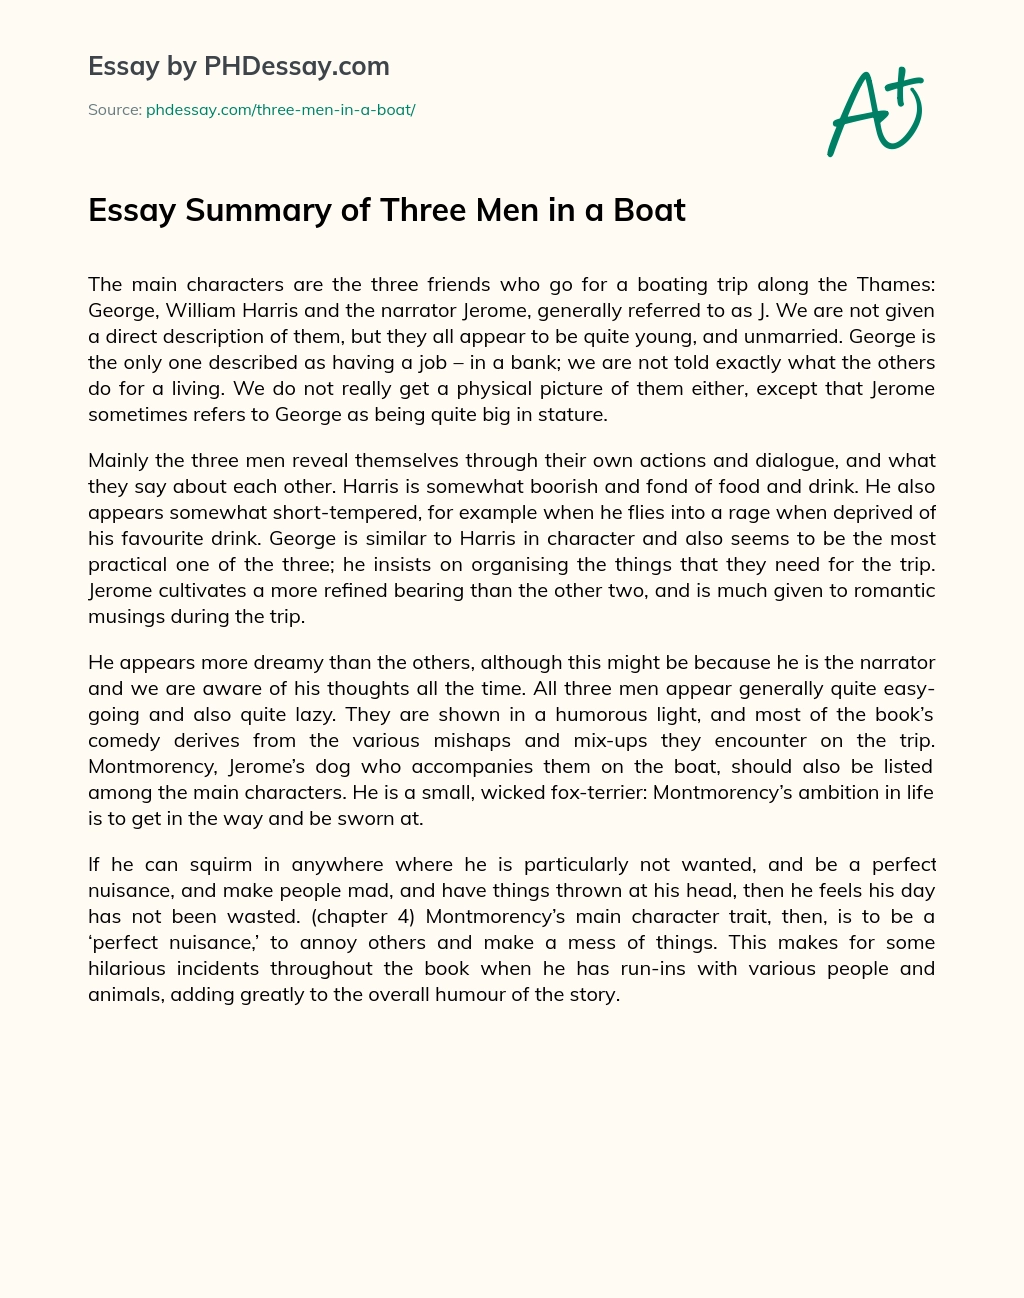 Essay Summary Of Three Men In A Boat Phdessay 